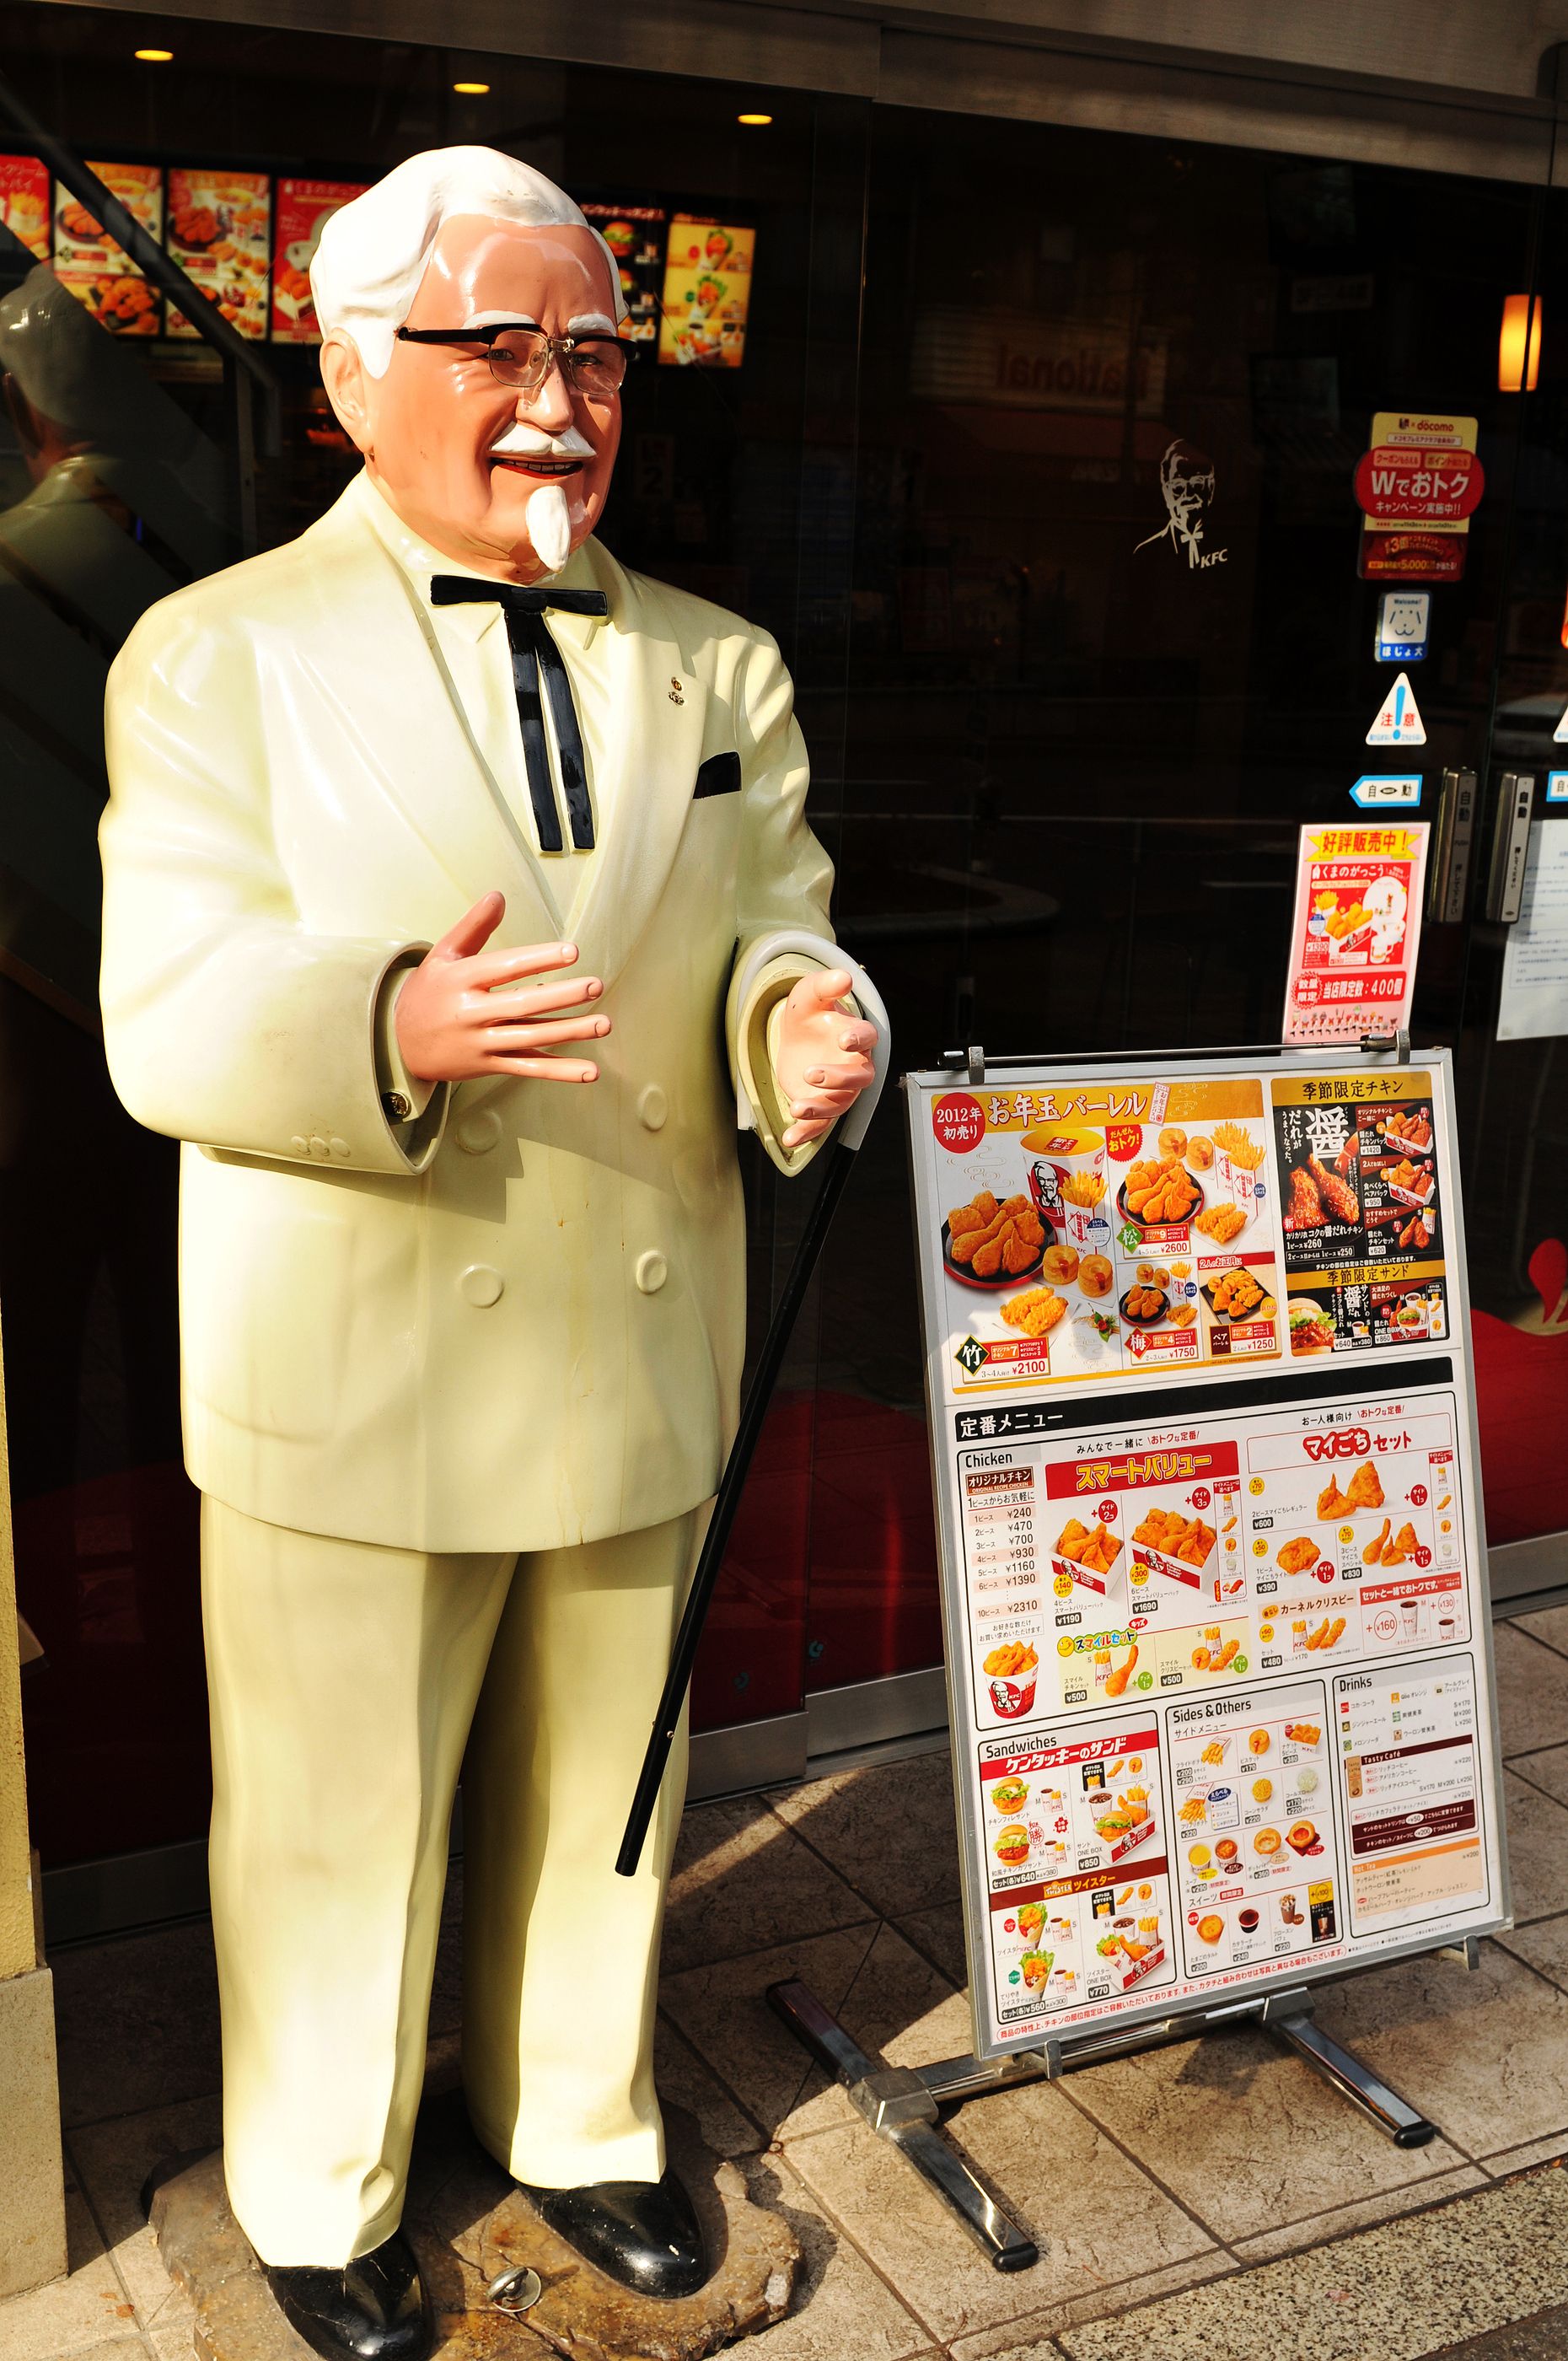 La increíble historia de emprendimiento del Coronel Sanders, el creador de KFC. Foto: bigstock